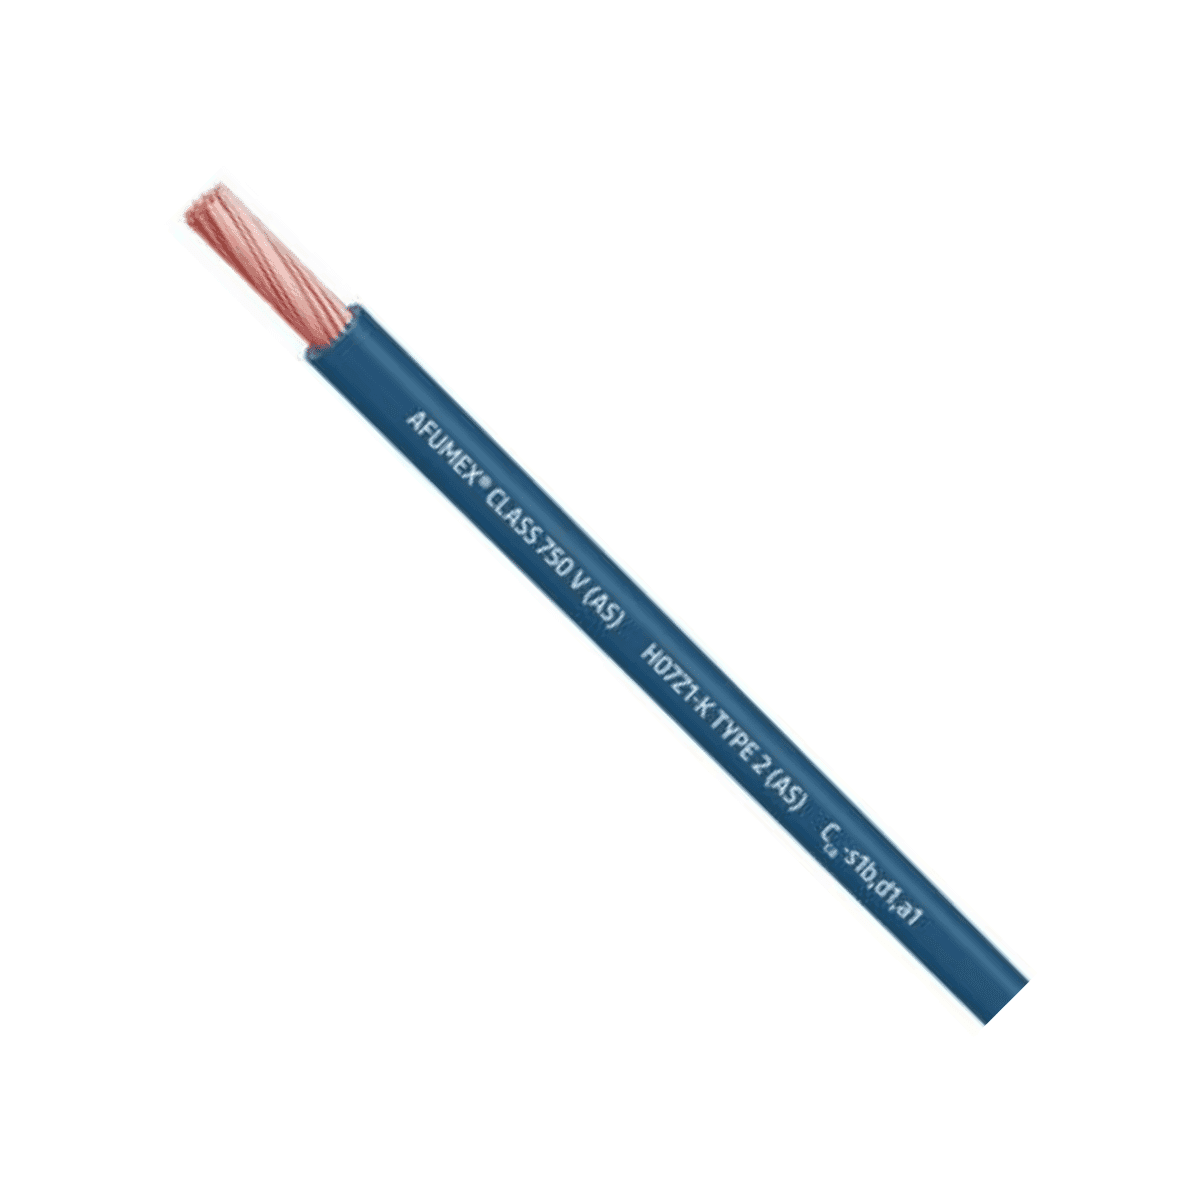 Cable Afumex H07Z1-K AS 750 1x1.5mm2 azul - Caja de 200 metros con referencia 20193977 de la marca PRYSMIAN